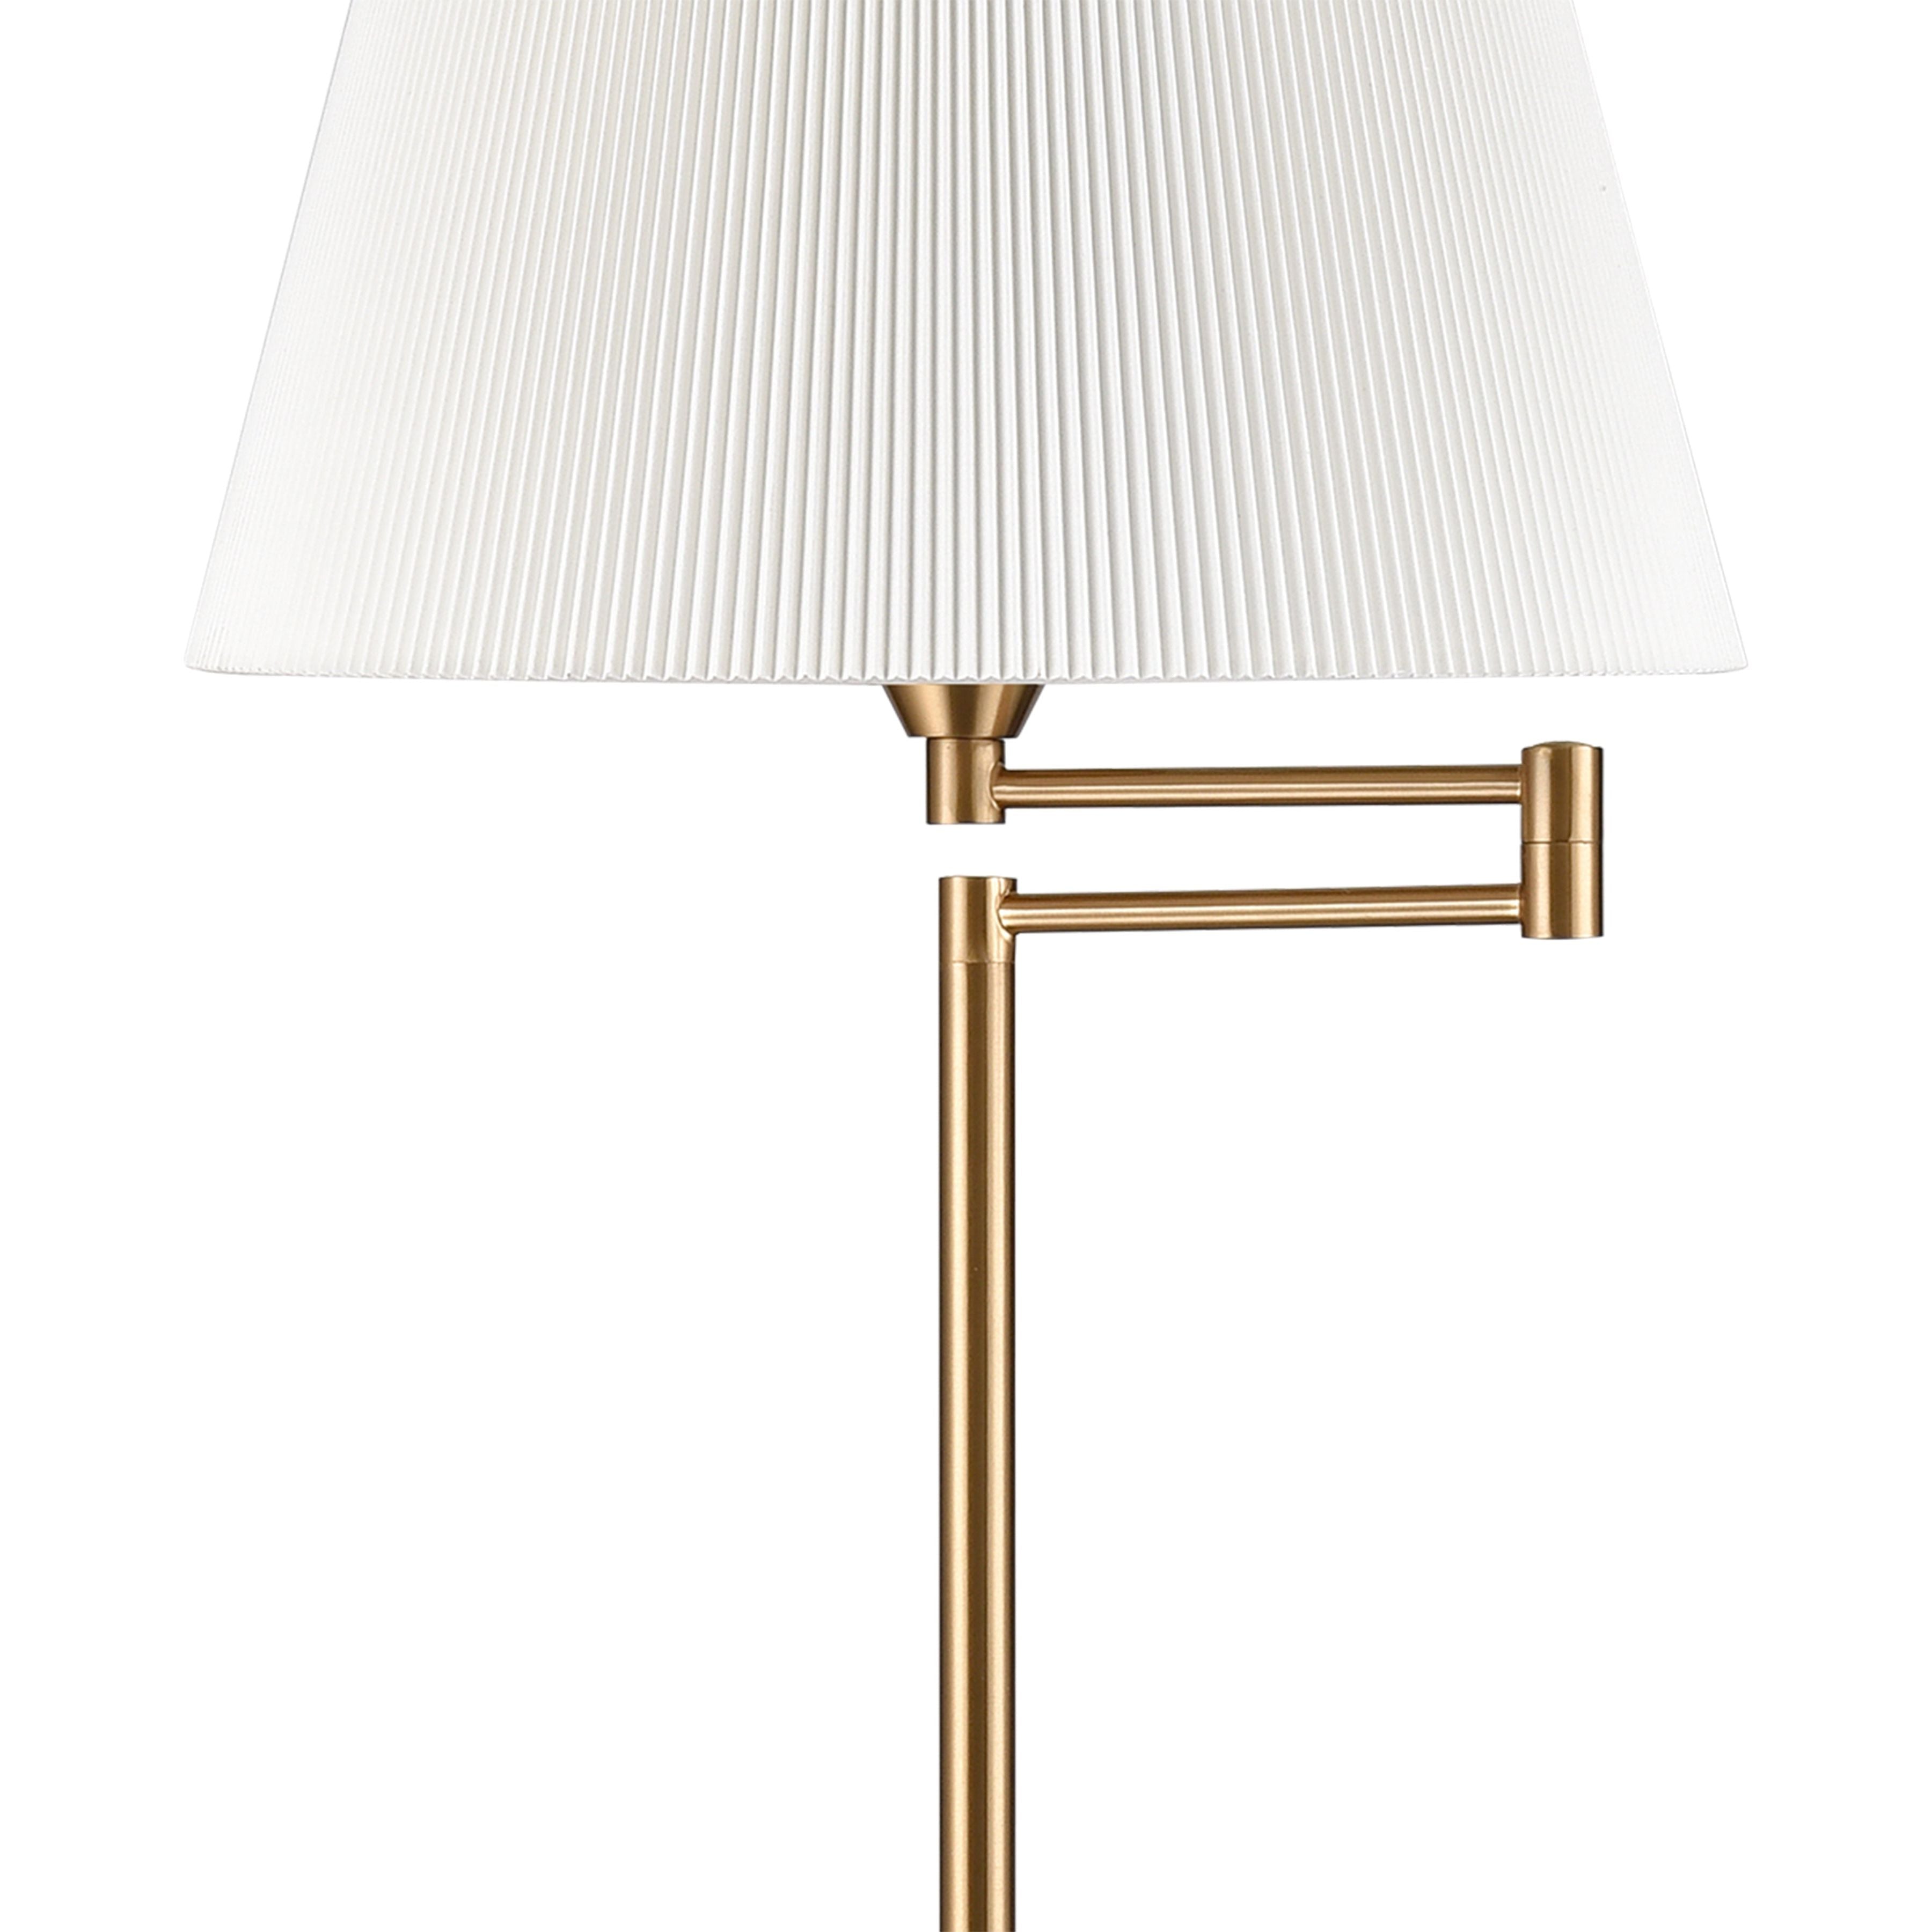 Scope 65" High 1-Light Floor Lamp